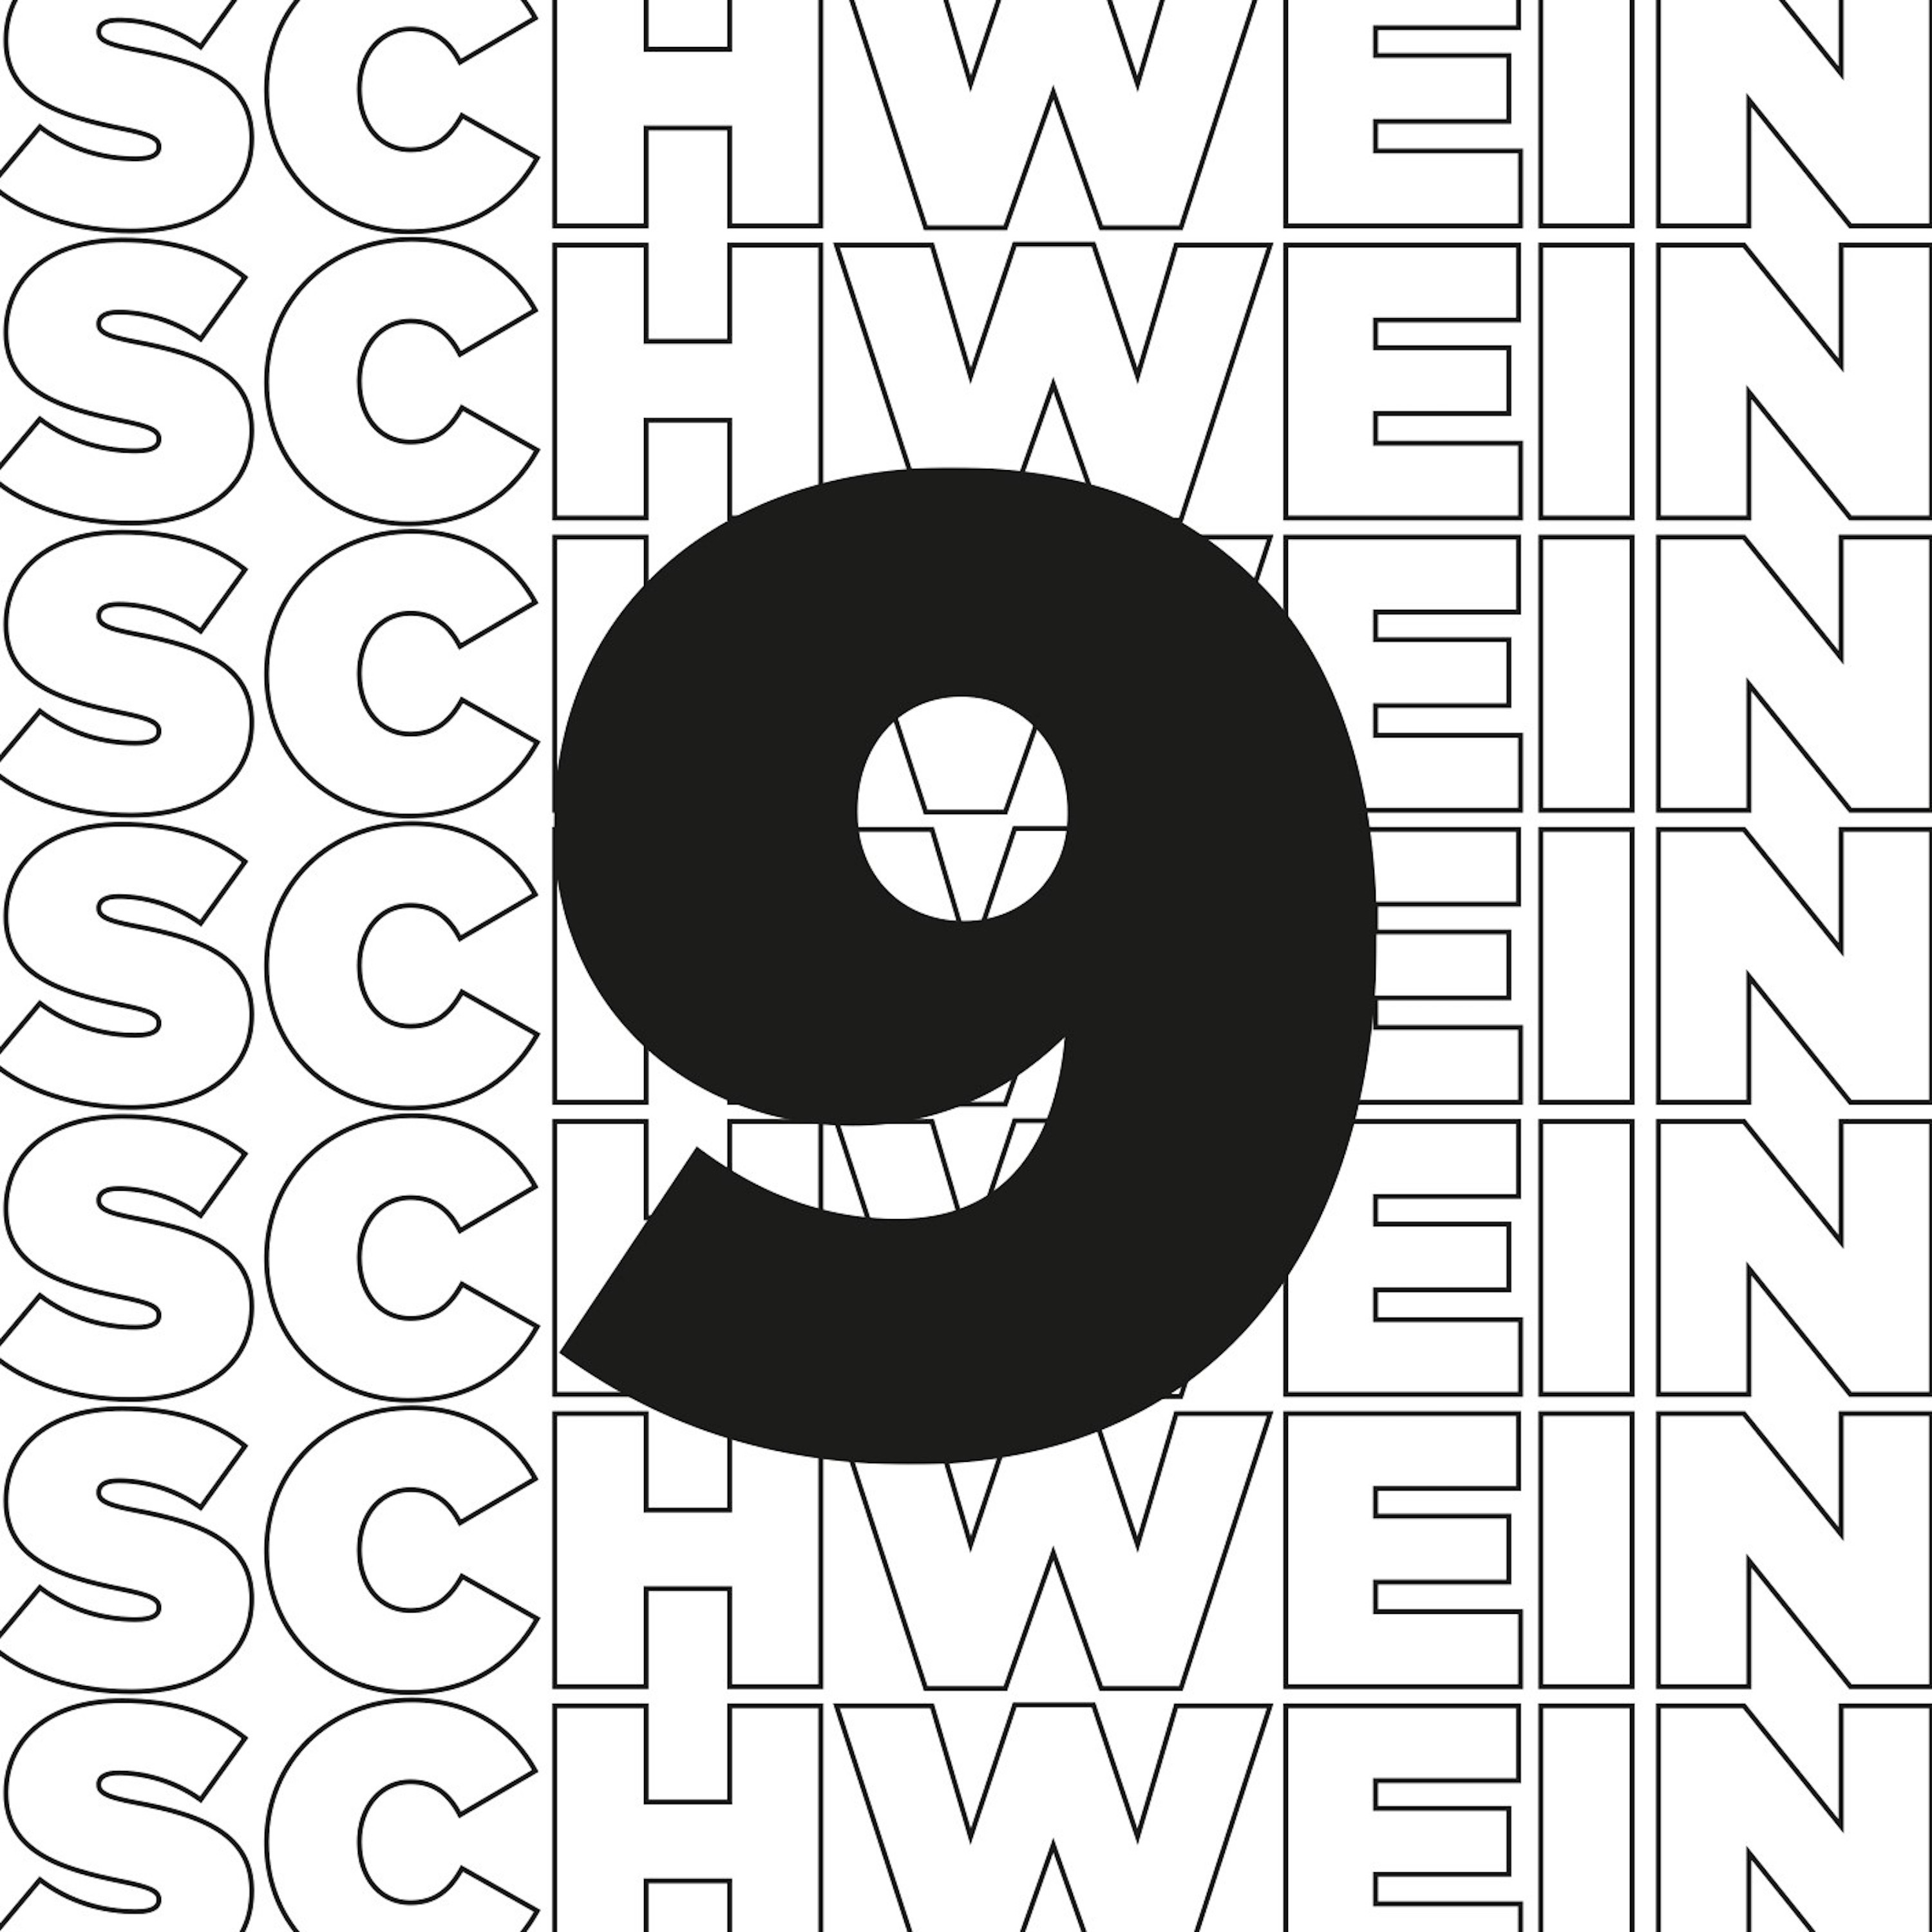 Schwein9 - Der Ulmer Baukultur-Podcast